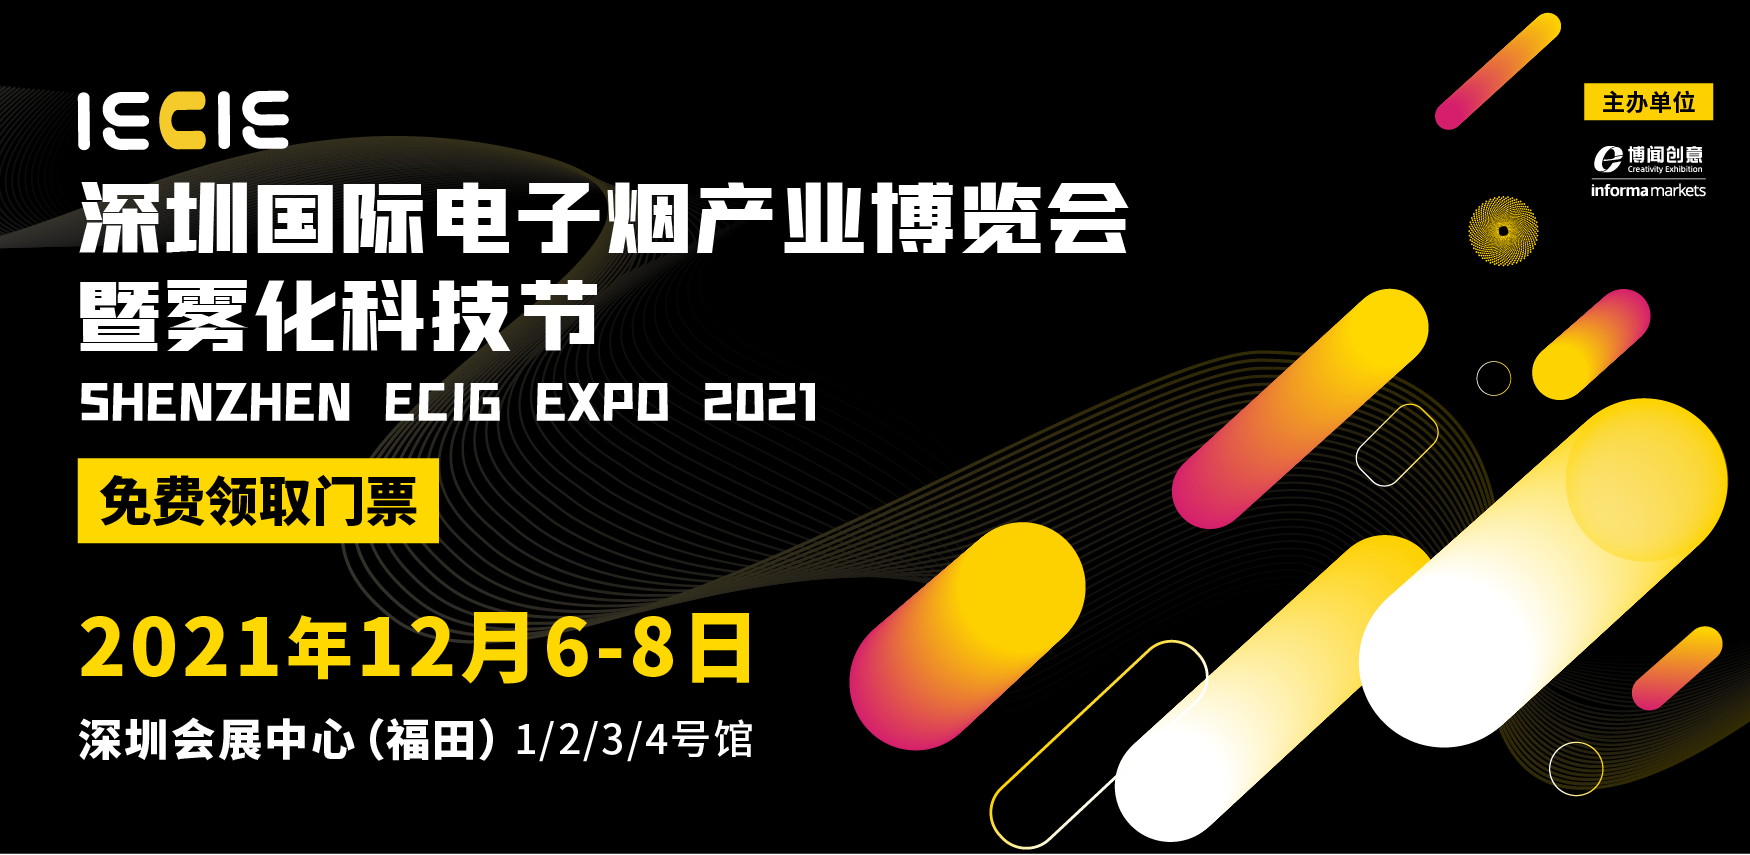 深圳國際電子煙產業展覽會IECIE